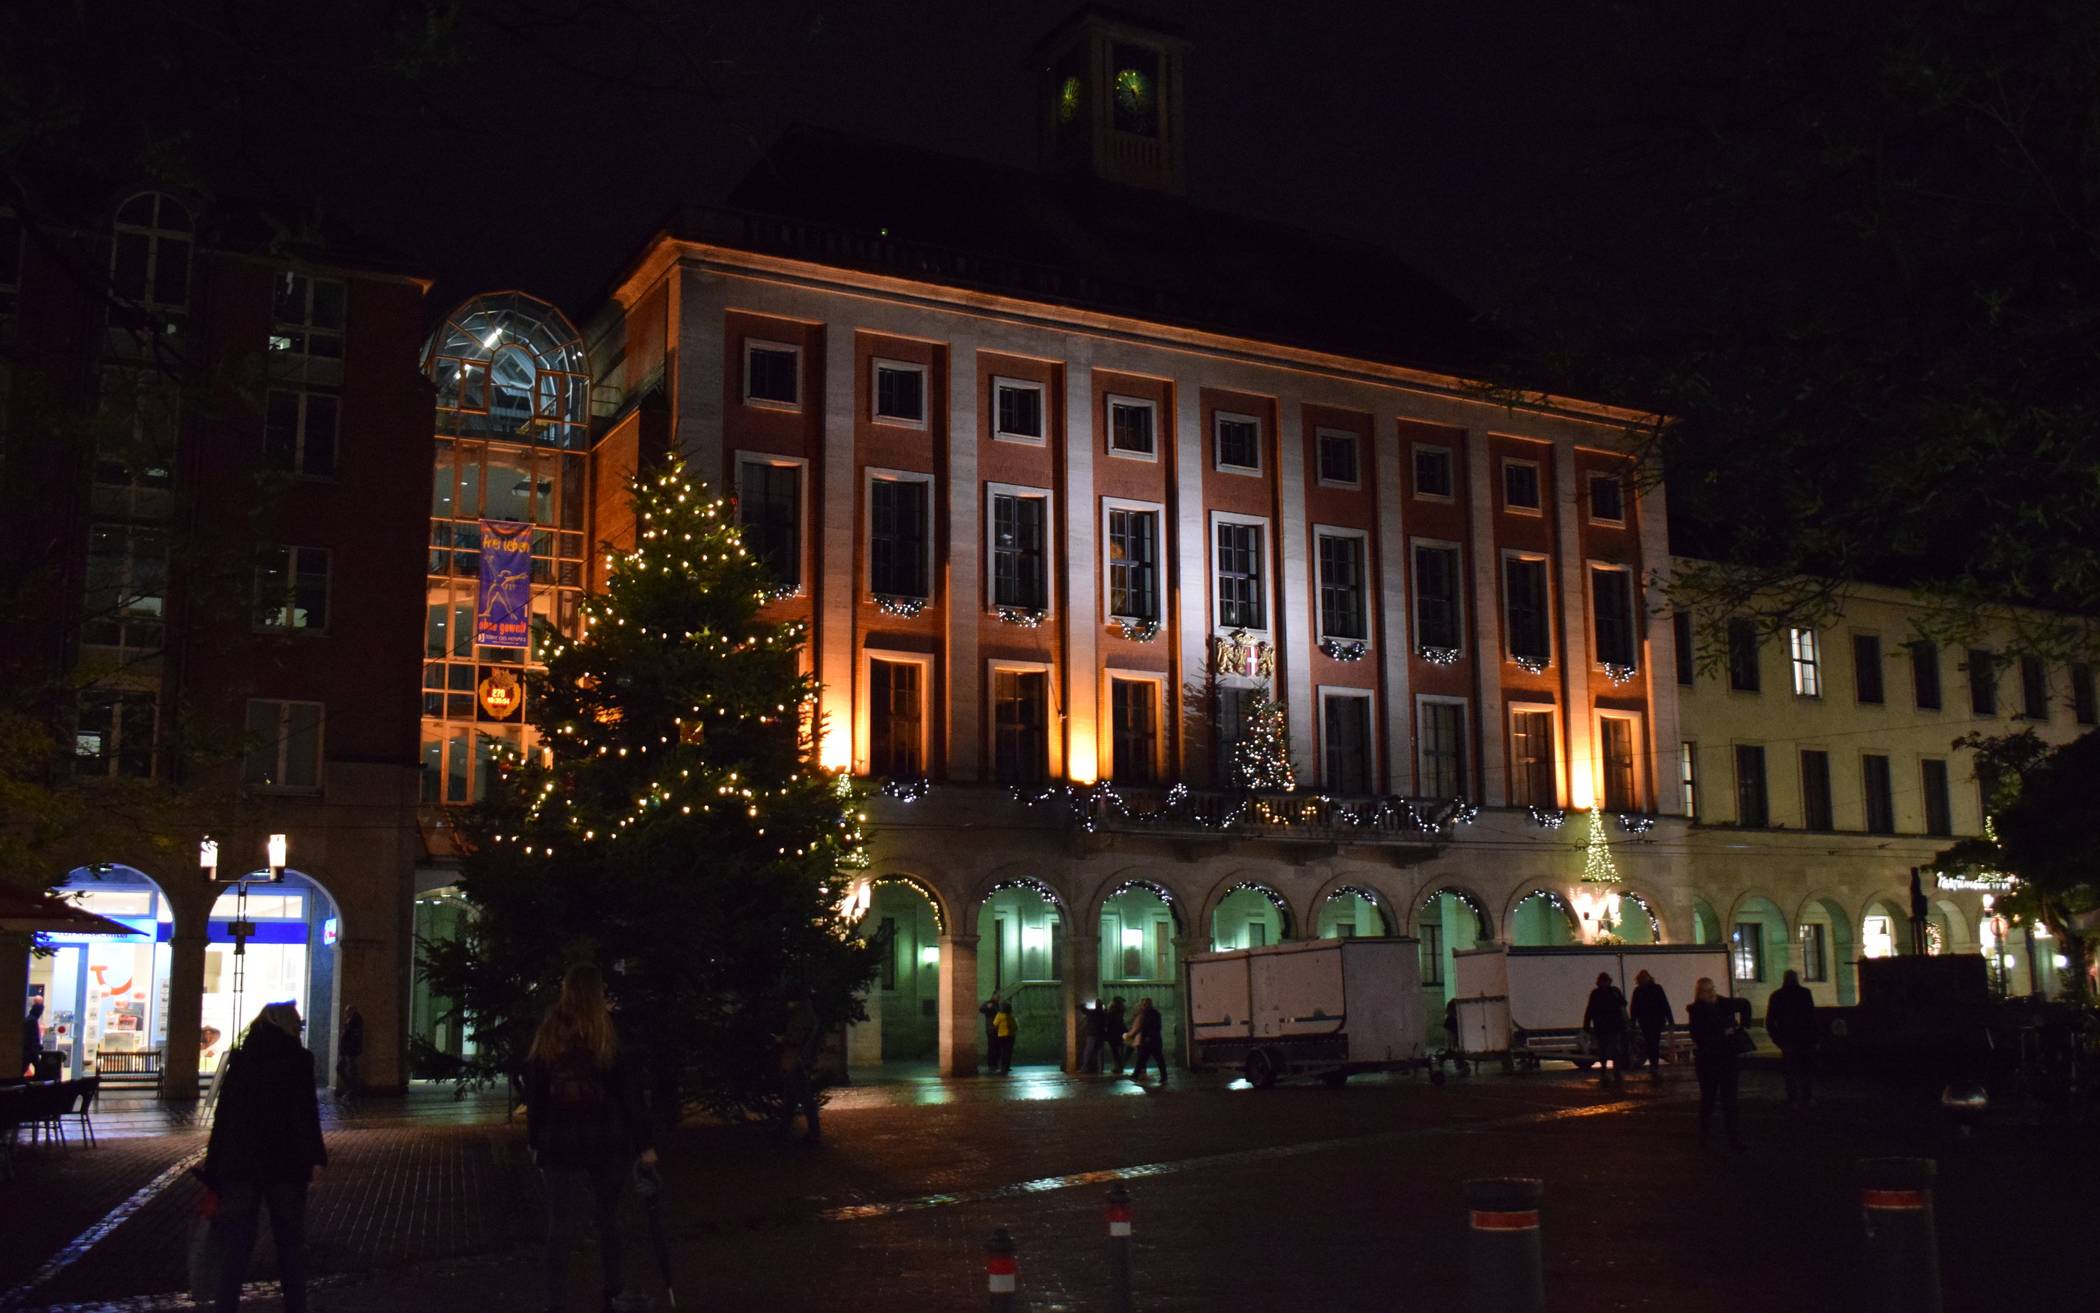  Am Samstag gehen in der City schon mal probeweise die Lichterketten an, am Dienstag folgt dann das offizielle Einschalten der Weihnachtsbeleuchtung mit dem Bürgermeister und dampfendem Glühwein.  